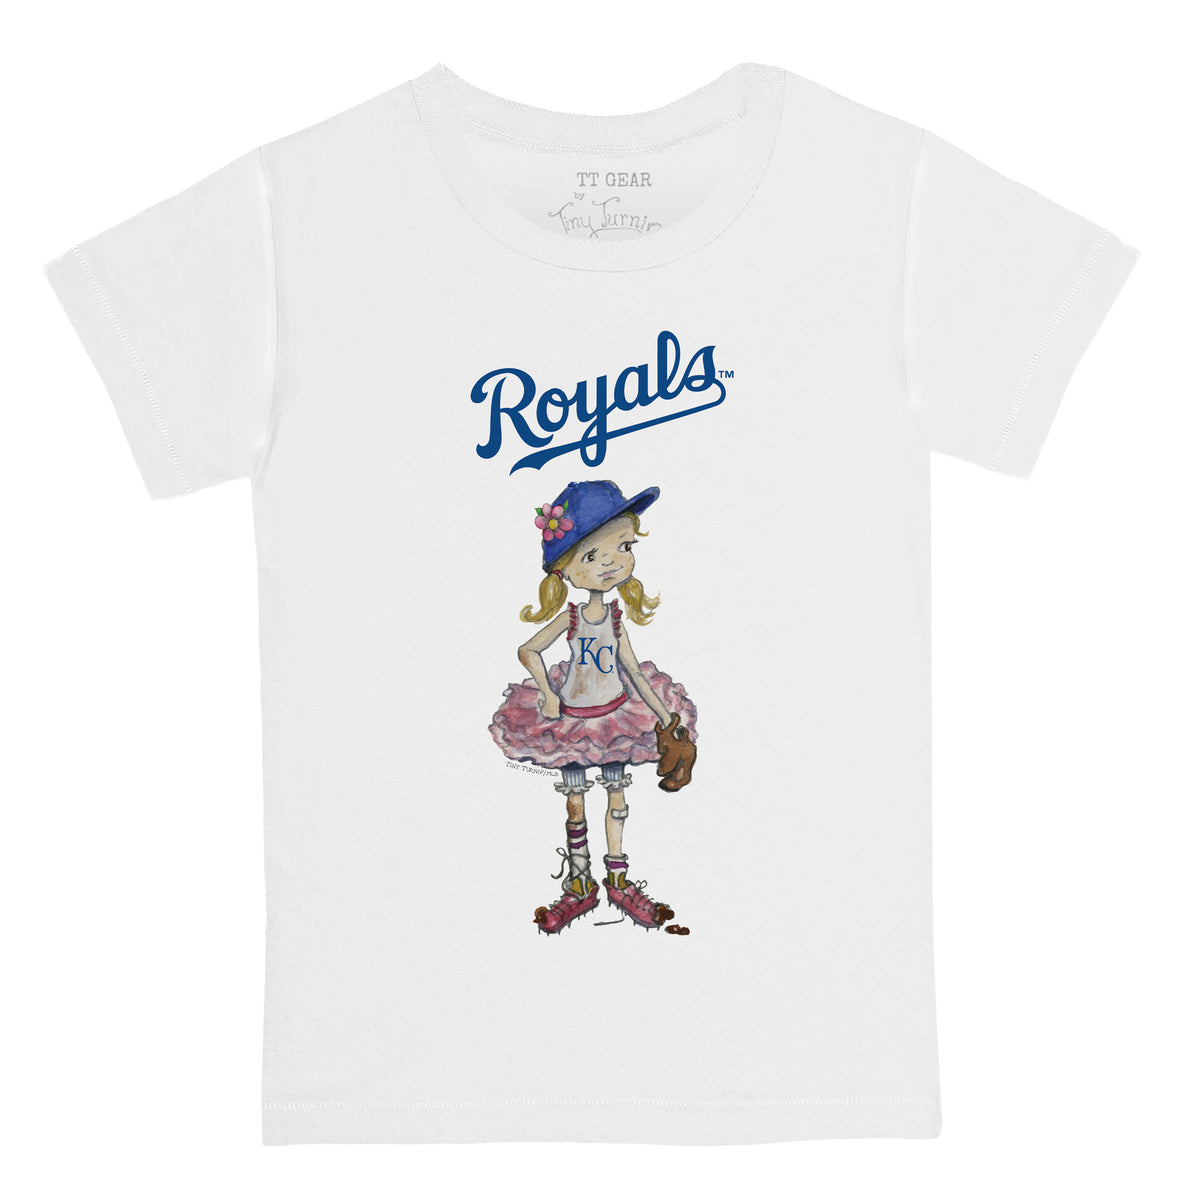 Kansas City Royals Babes Tee Shirt